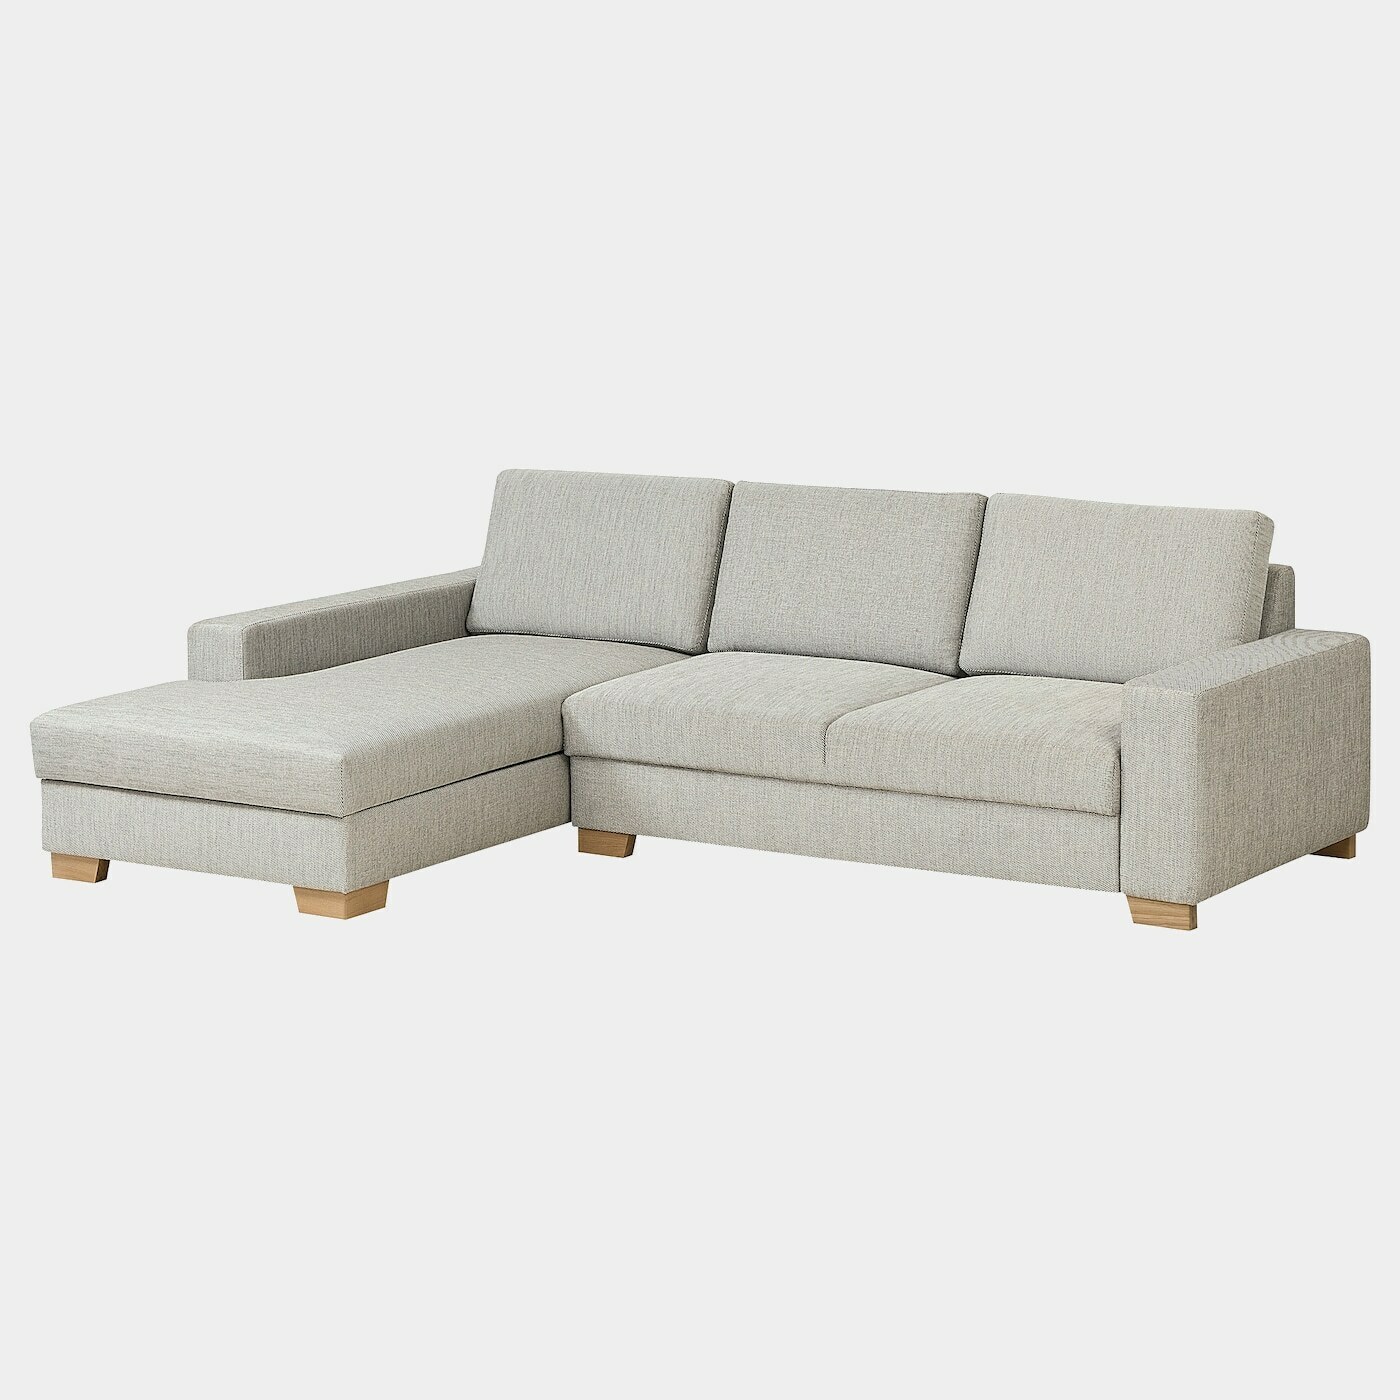 SÖRVALLEN 3er-Sofa  -  - Möbel Ideen für dein Zuhause von Home Trends. Möbel Trends von Social Media Influencer für dein Skandi Zuhause.